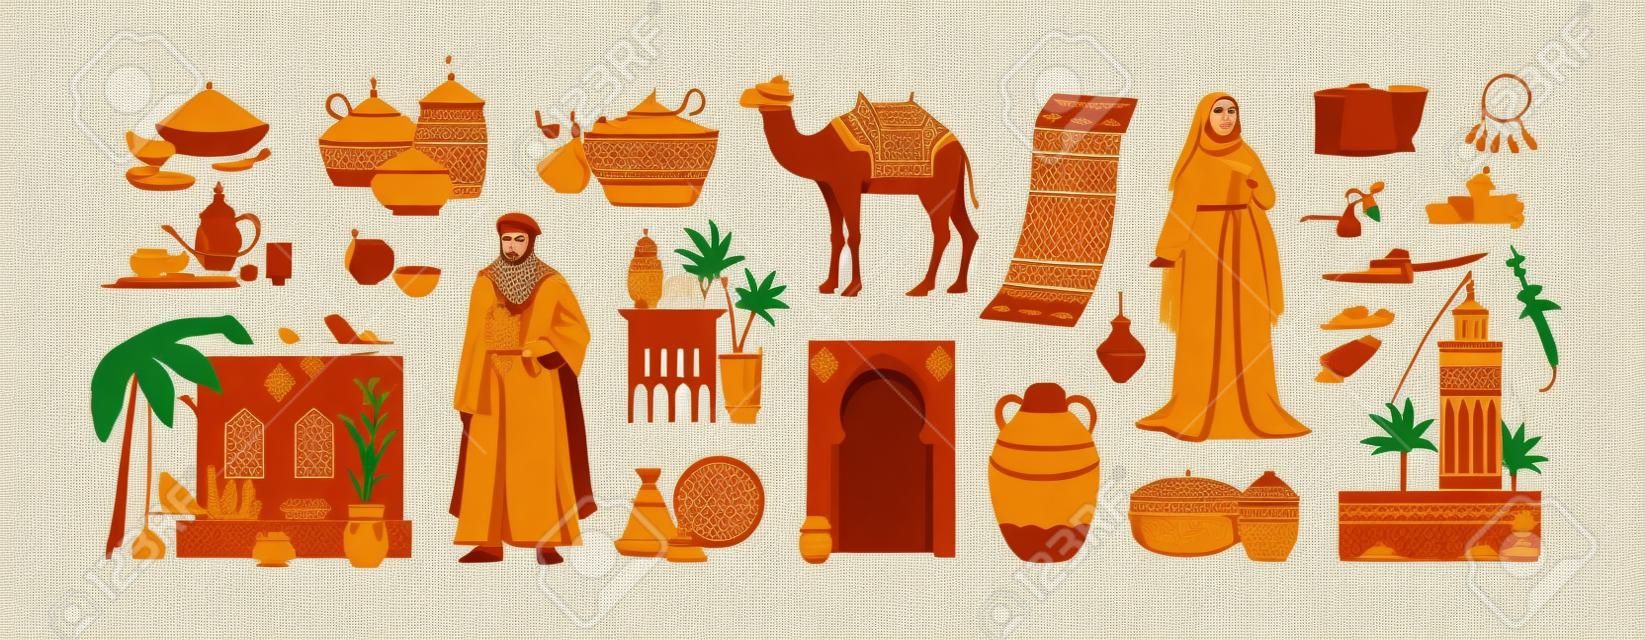 Cultura marroquina tradicional conjunto herança marroquina comida árabe cerâmica arquitetura roupas acessórios camelo tapete oriental condimentos ilustrações vetoriais planas isoladas em fundo branco